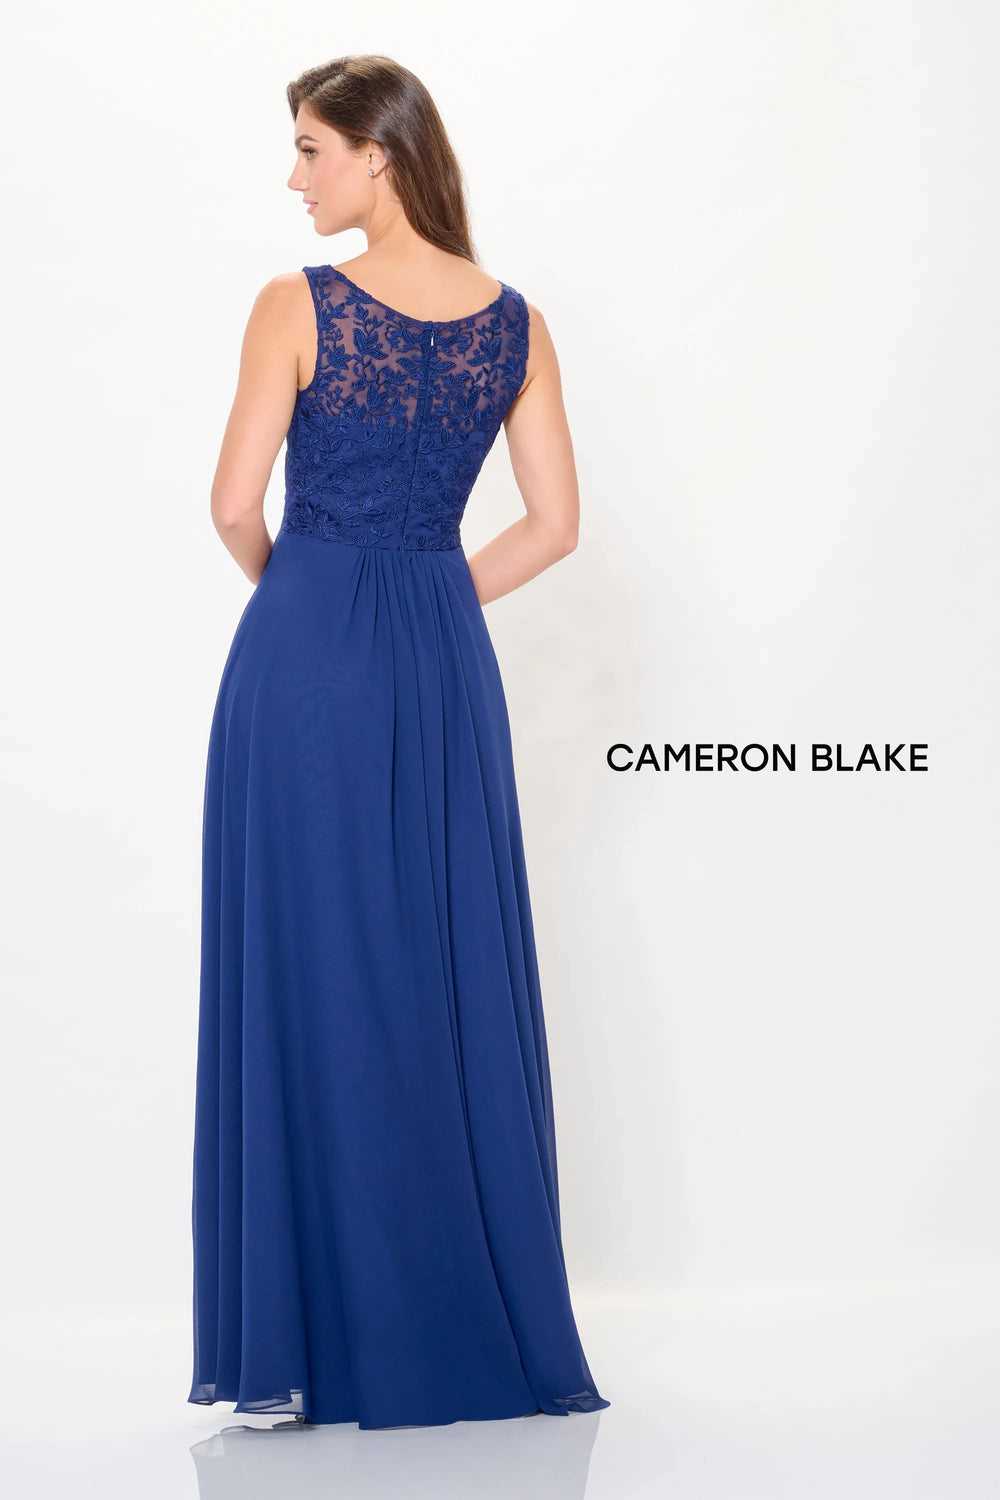 Mon Cheri Cameron Blake Dress Mon Cheri Cameron Blake CB3239 Dress